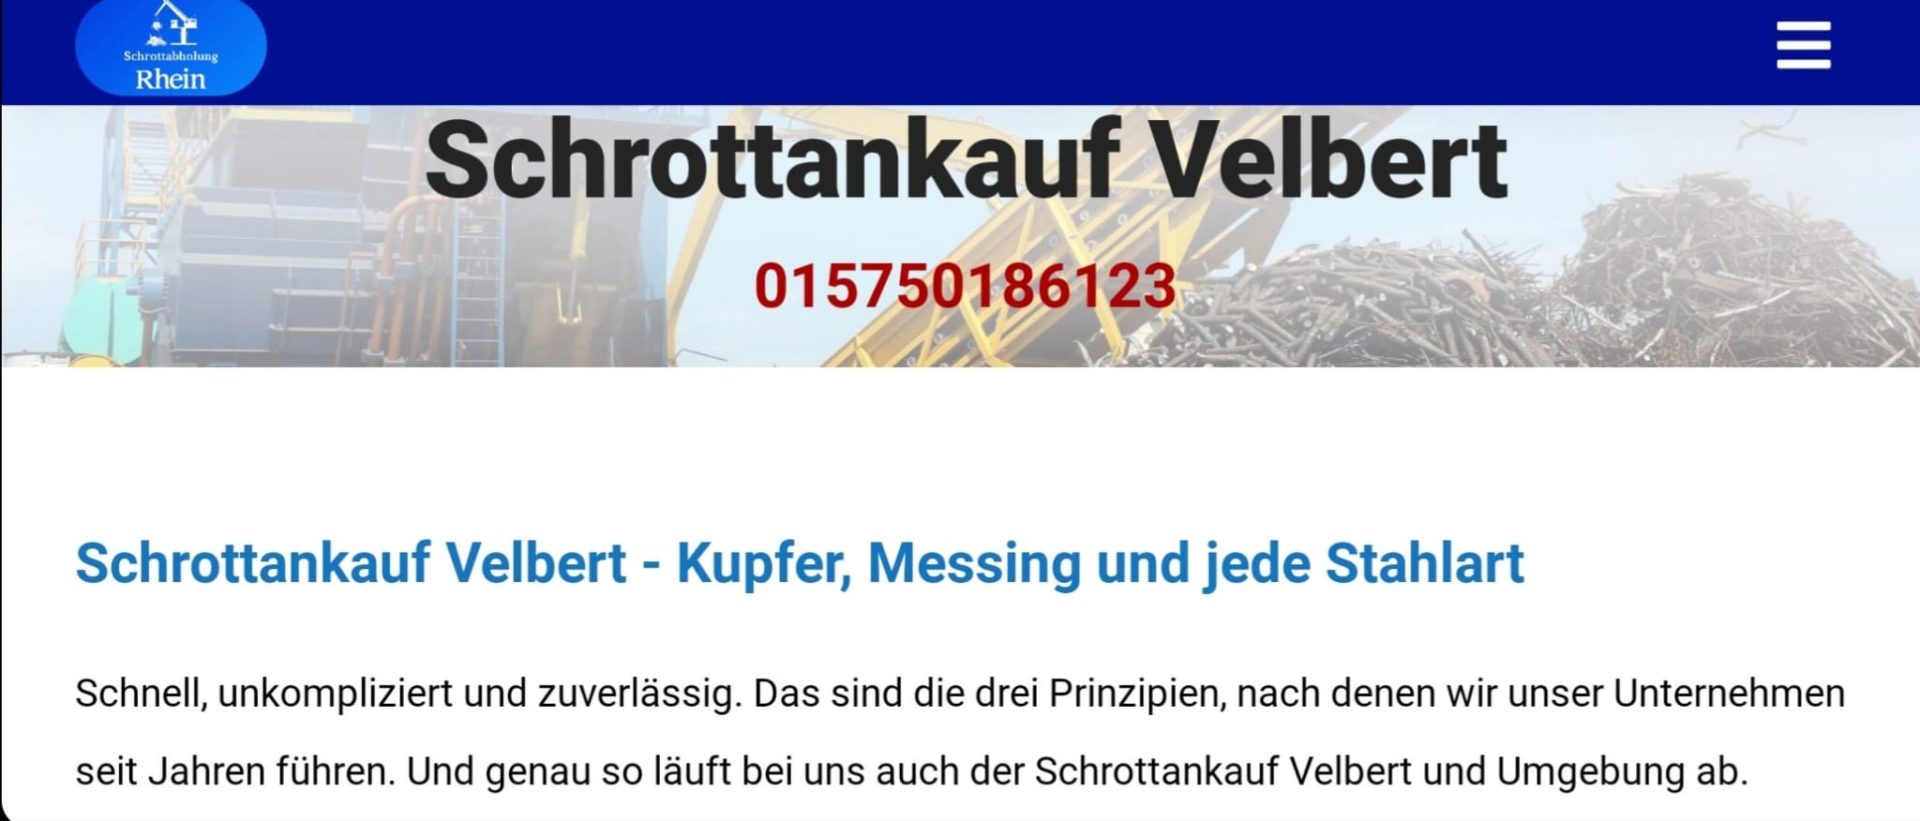 Schrottankauf Velbert-51b2789b